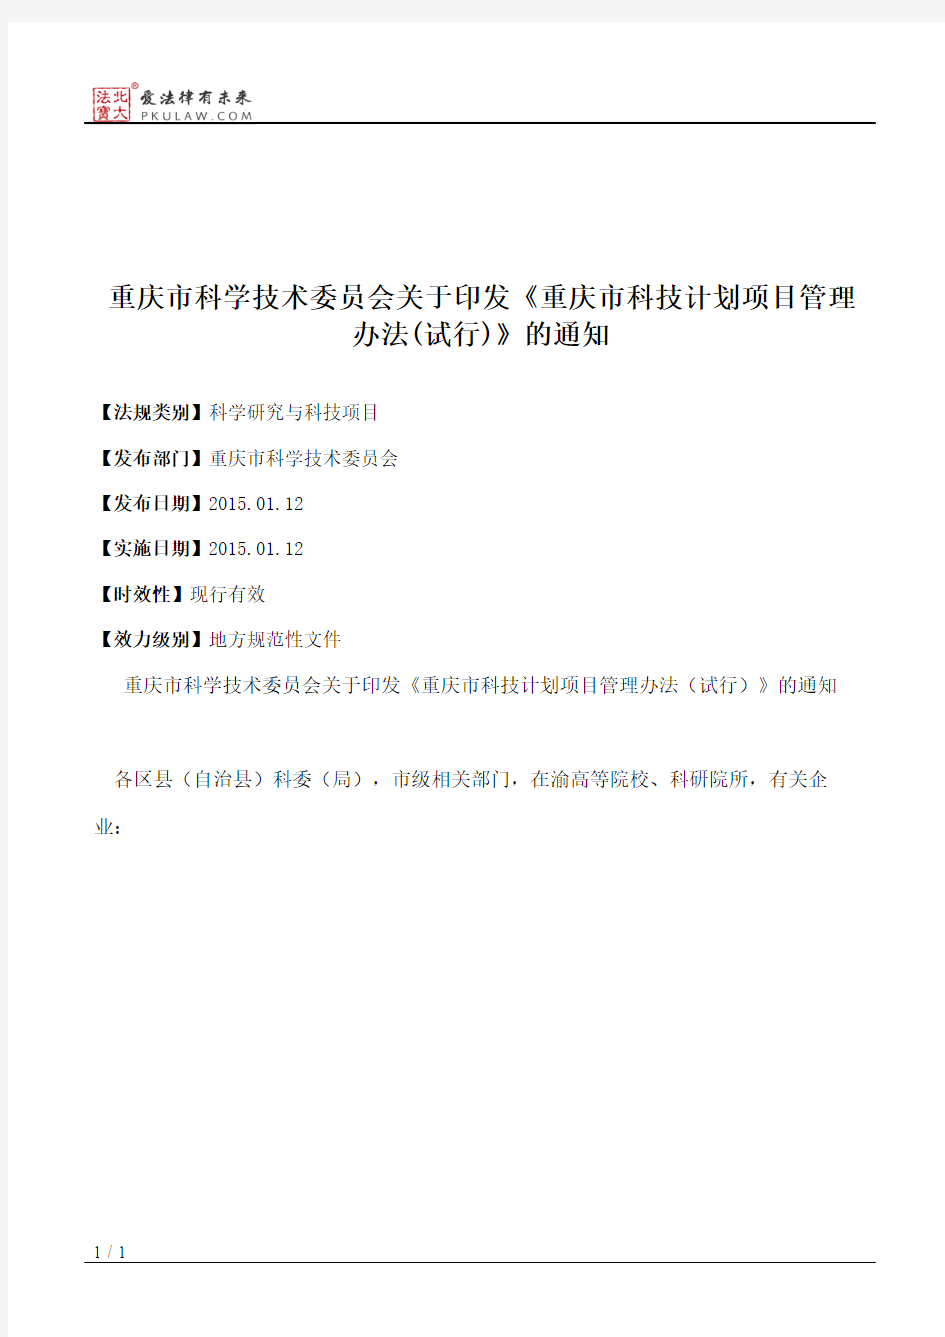 重庆市科学技术委员会关于印发《重庆市科技计划项目管理办法(试